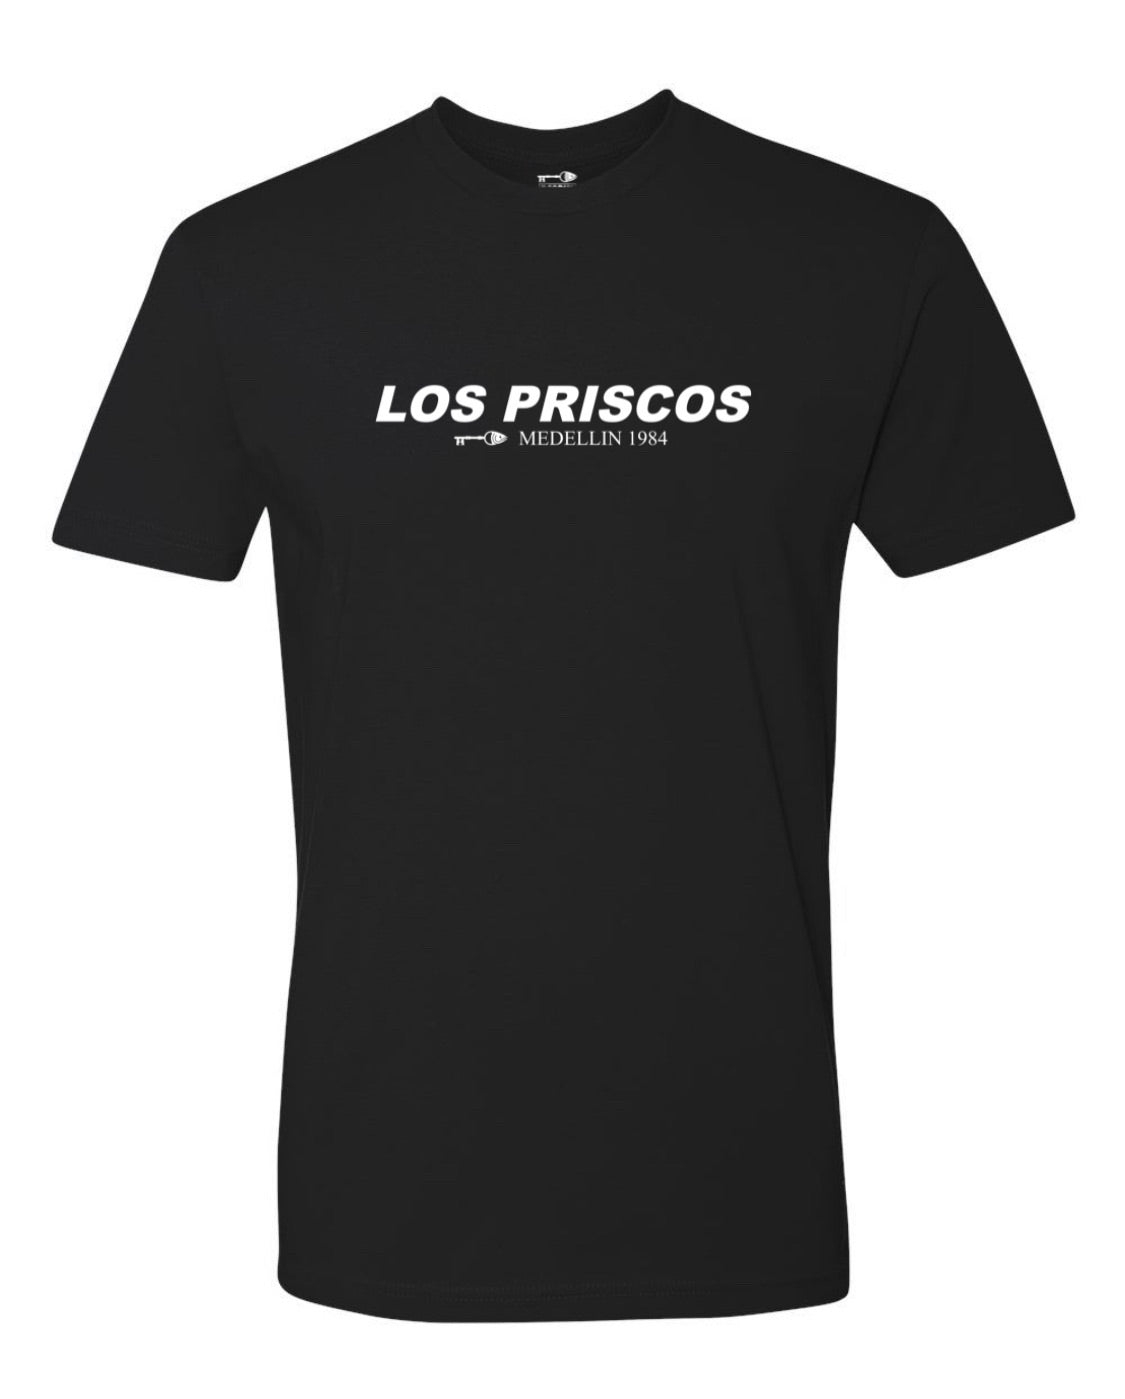 Los Priscos